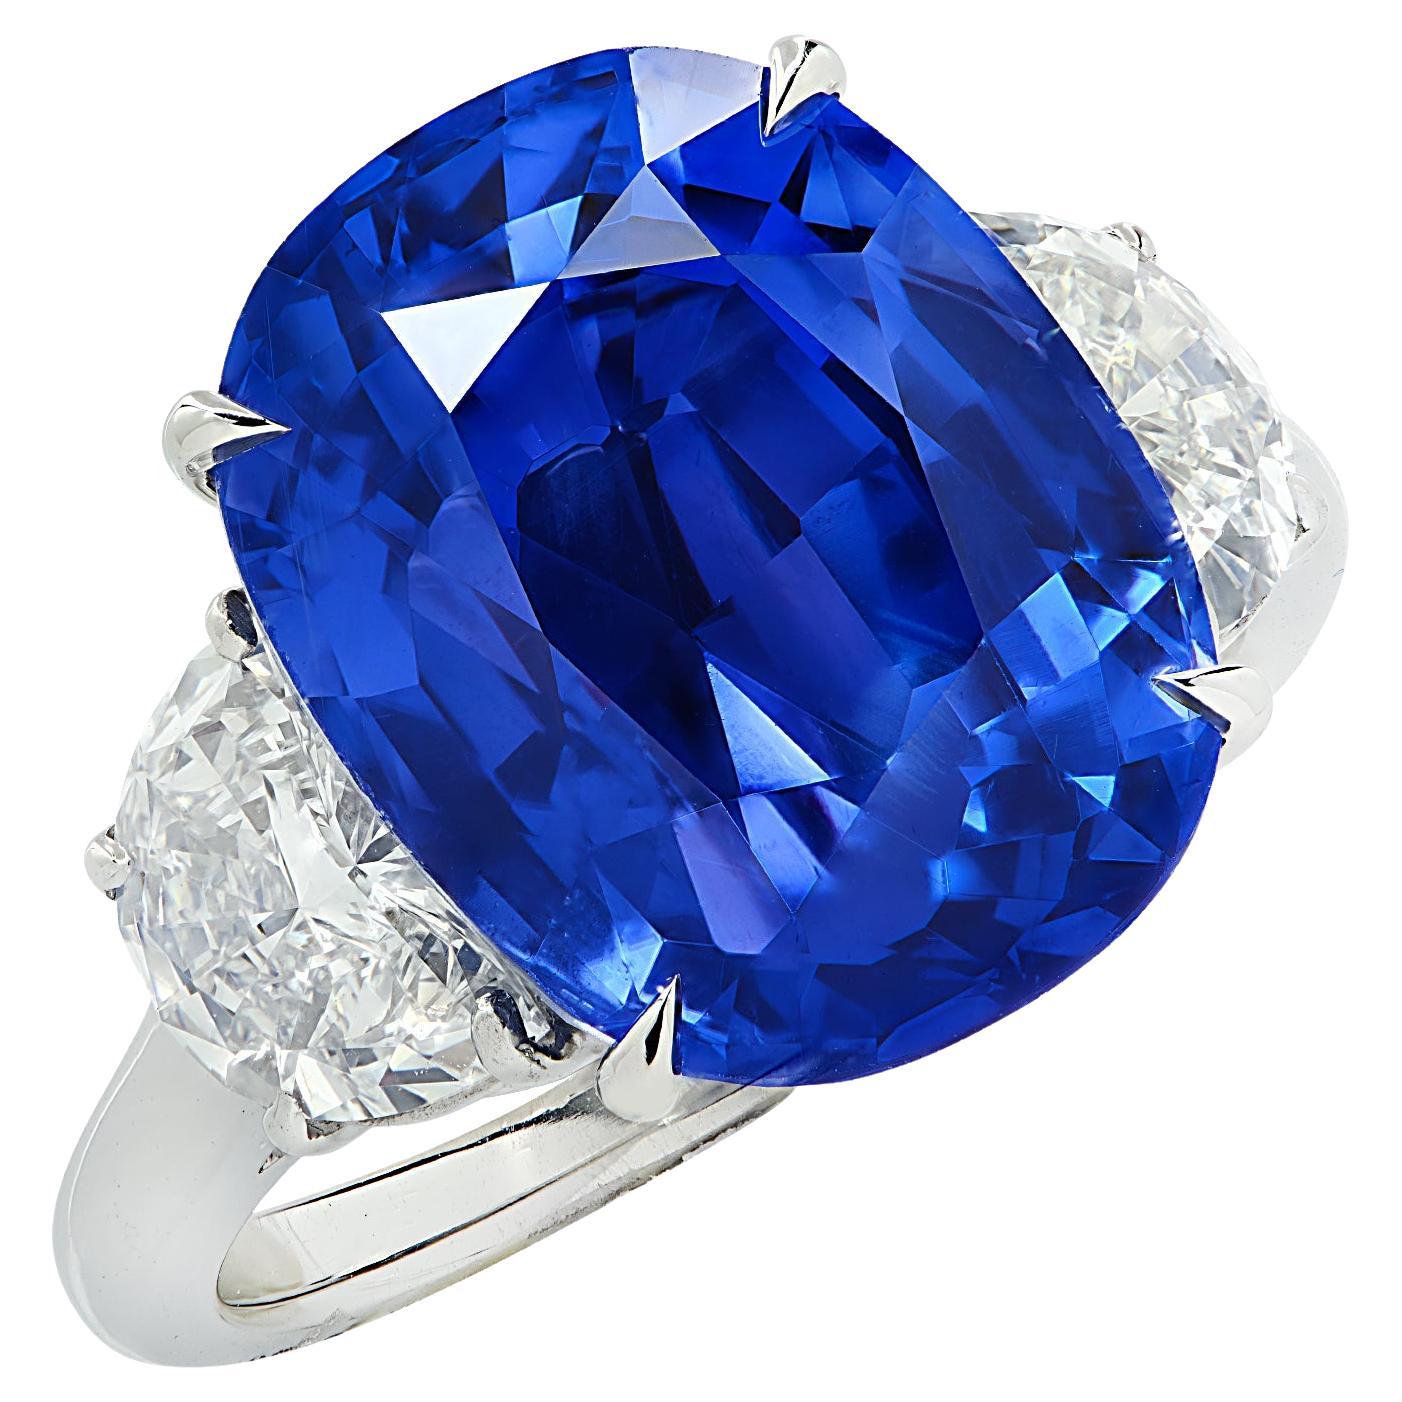 Vivid Diamonds AGL Certified 12.8 Carat Sapphire & Diamond Three Stone Ring